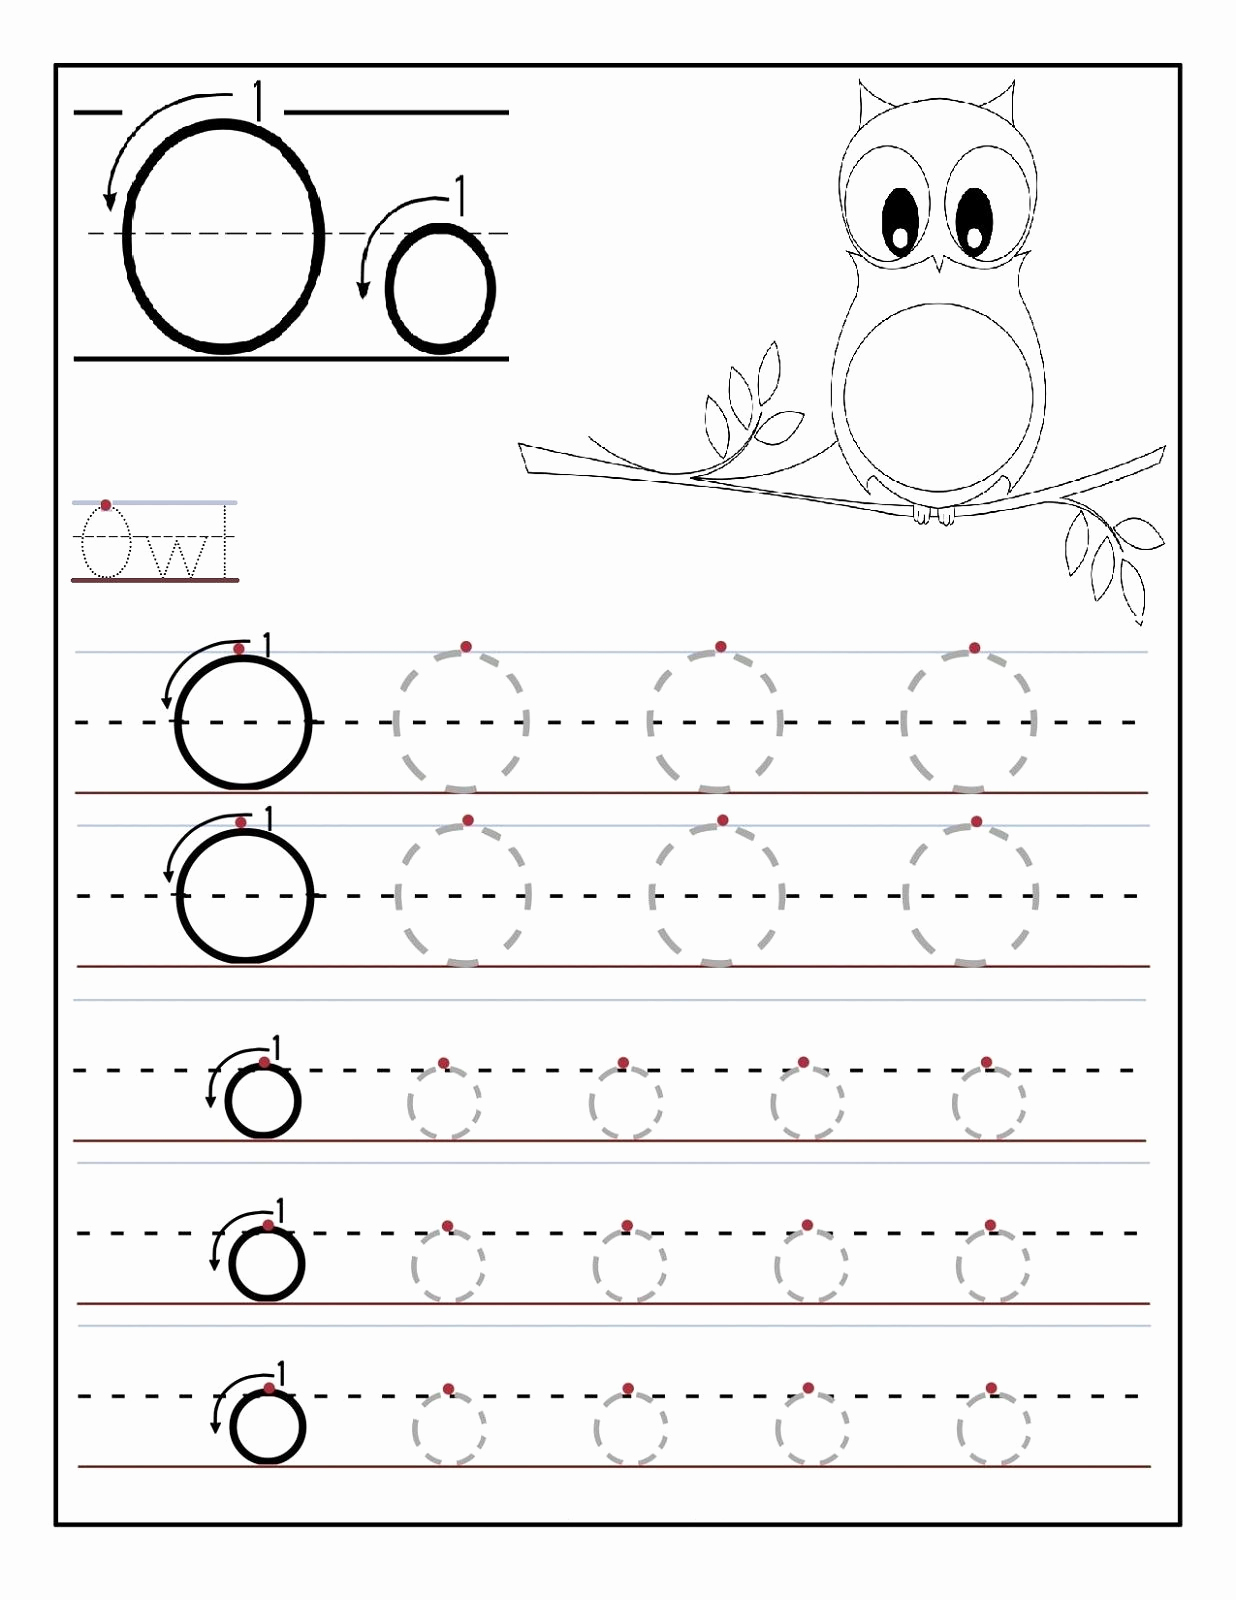 Letter O Worksheet for Kindergarten Awesome Trace Letter O Worksheets Preschool